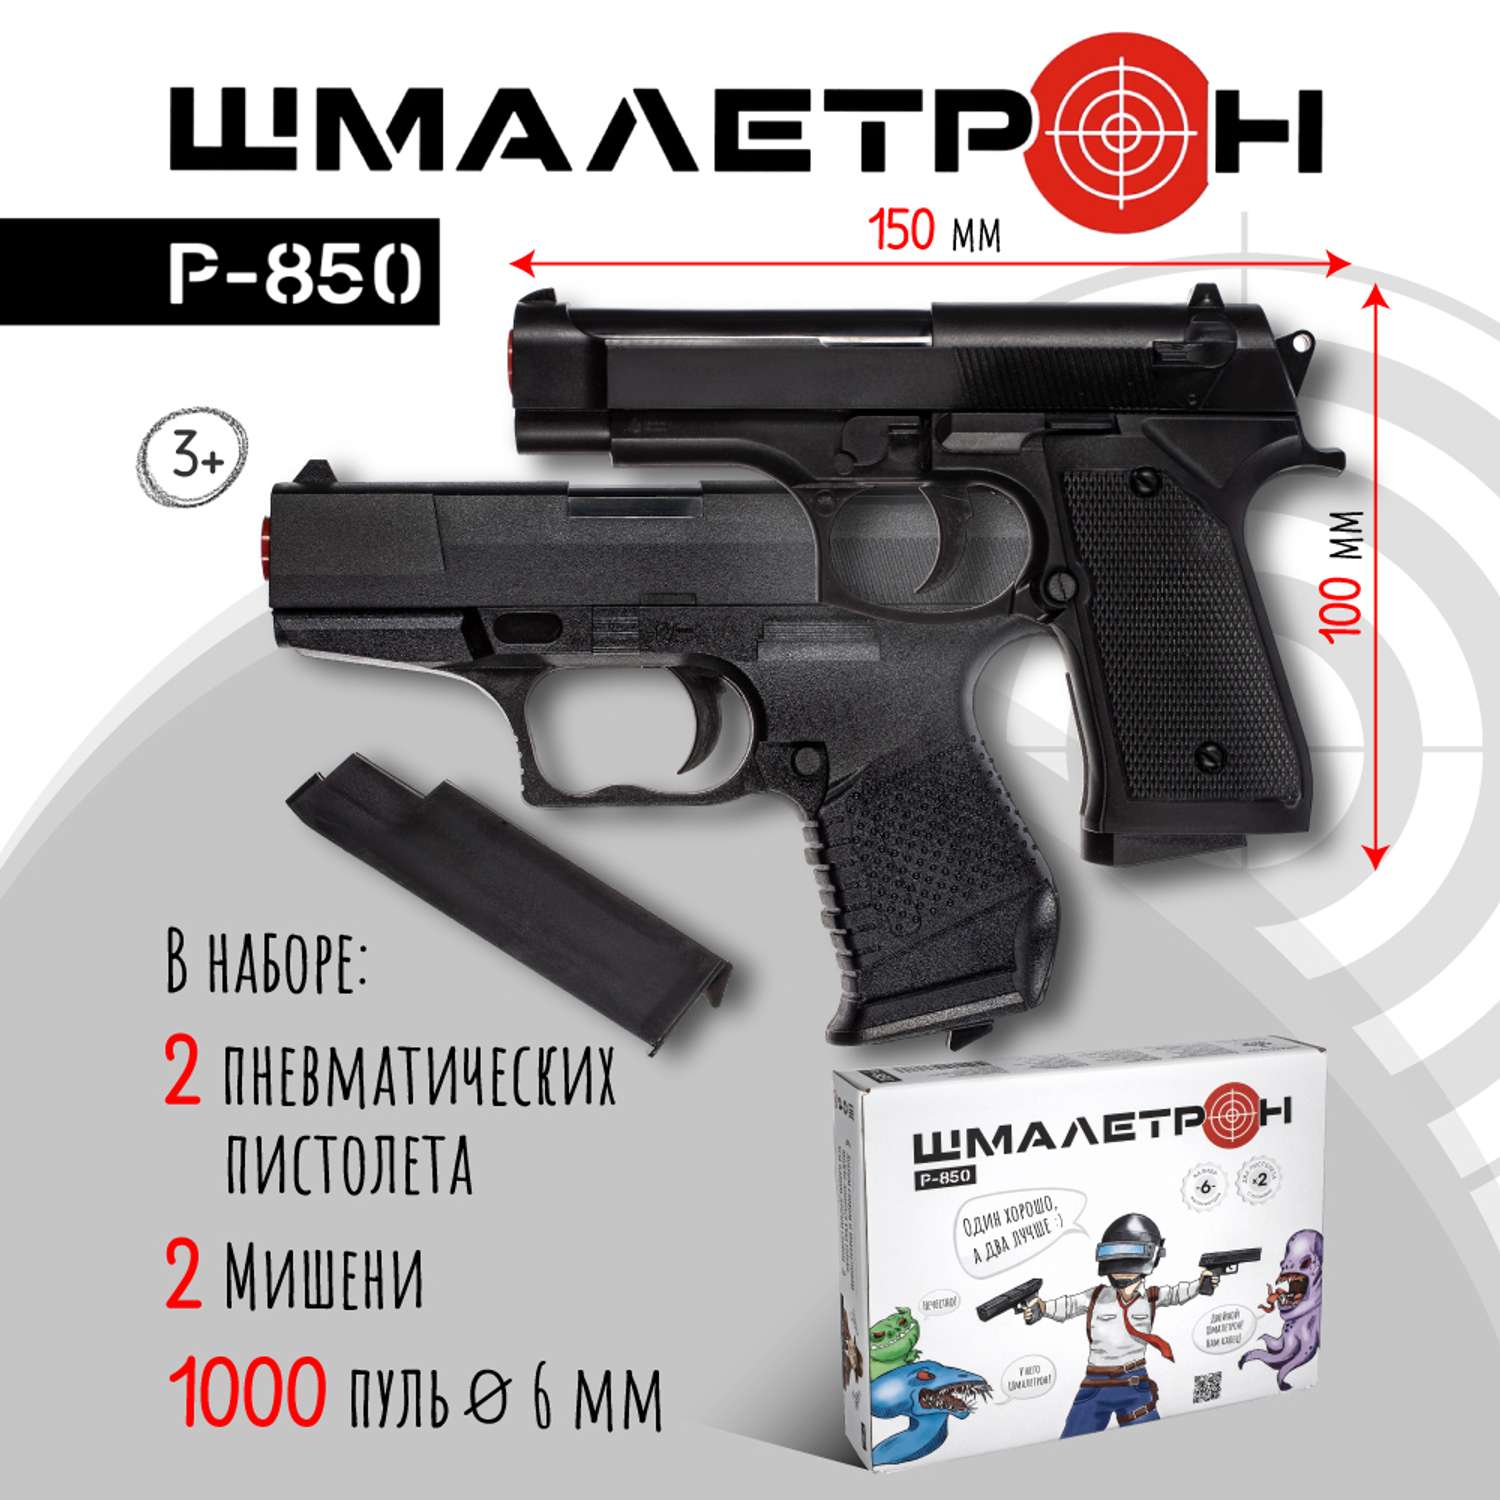 Игрушечное оружие Шмалетрон 2 пистолета Sig Sauer и Beretta с пульками и 1000 пулек 6 мм в подарок - фото 2